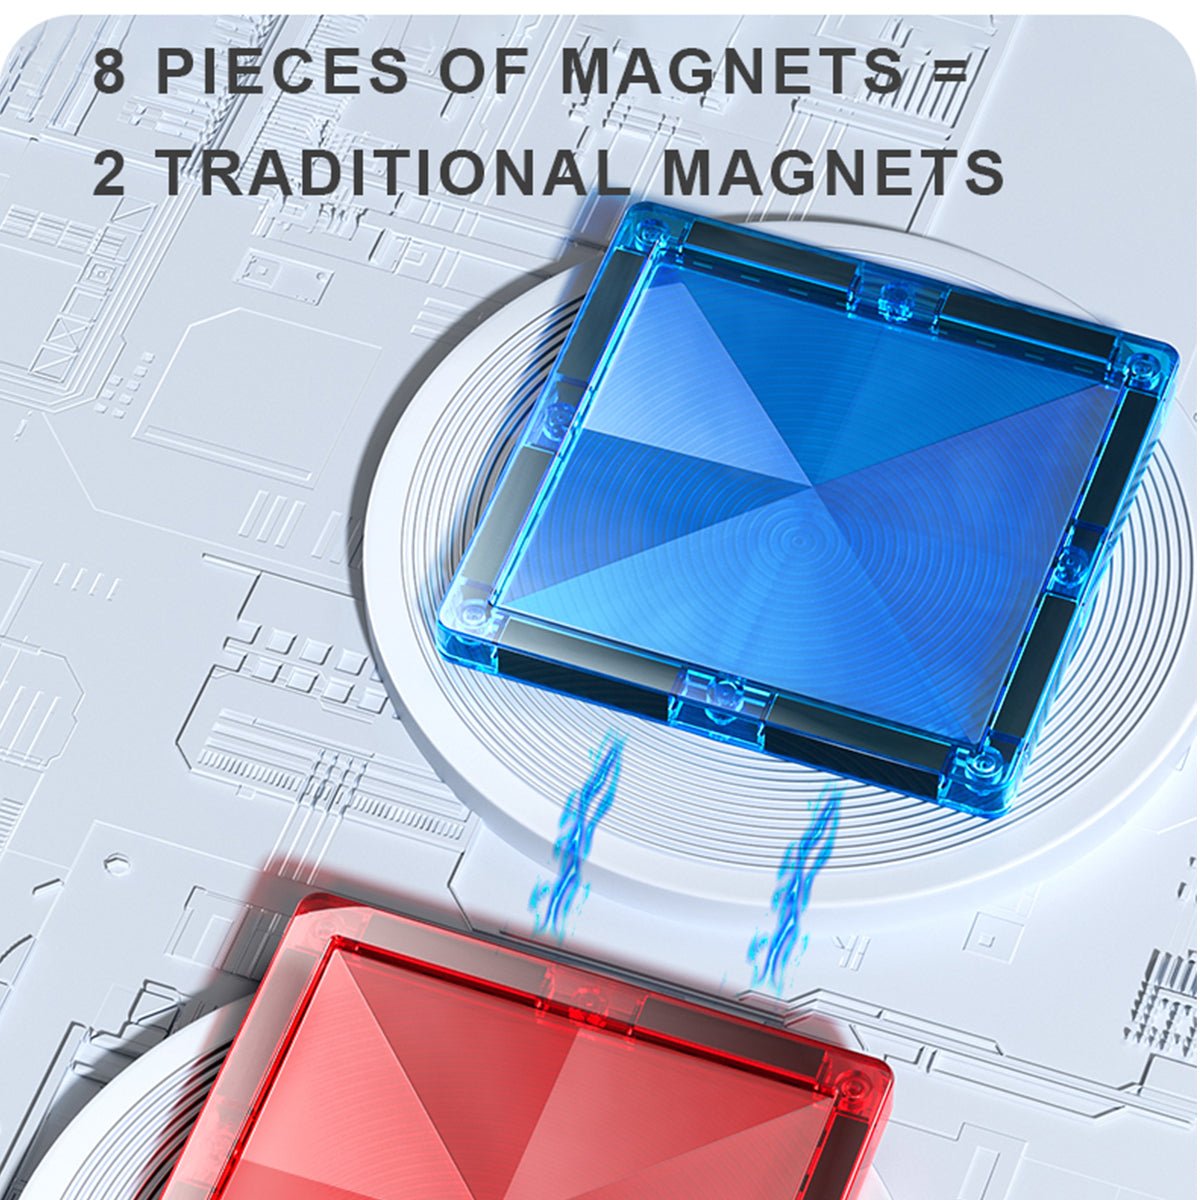 Distinctive Pack 100pcs Rainbow Magnetic Tiles - 0cm